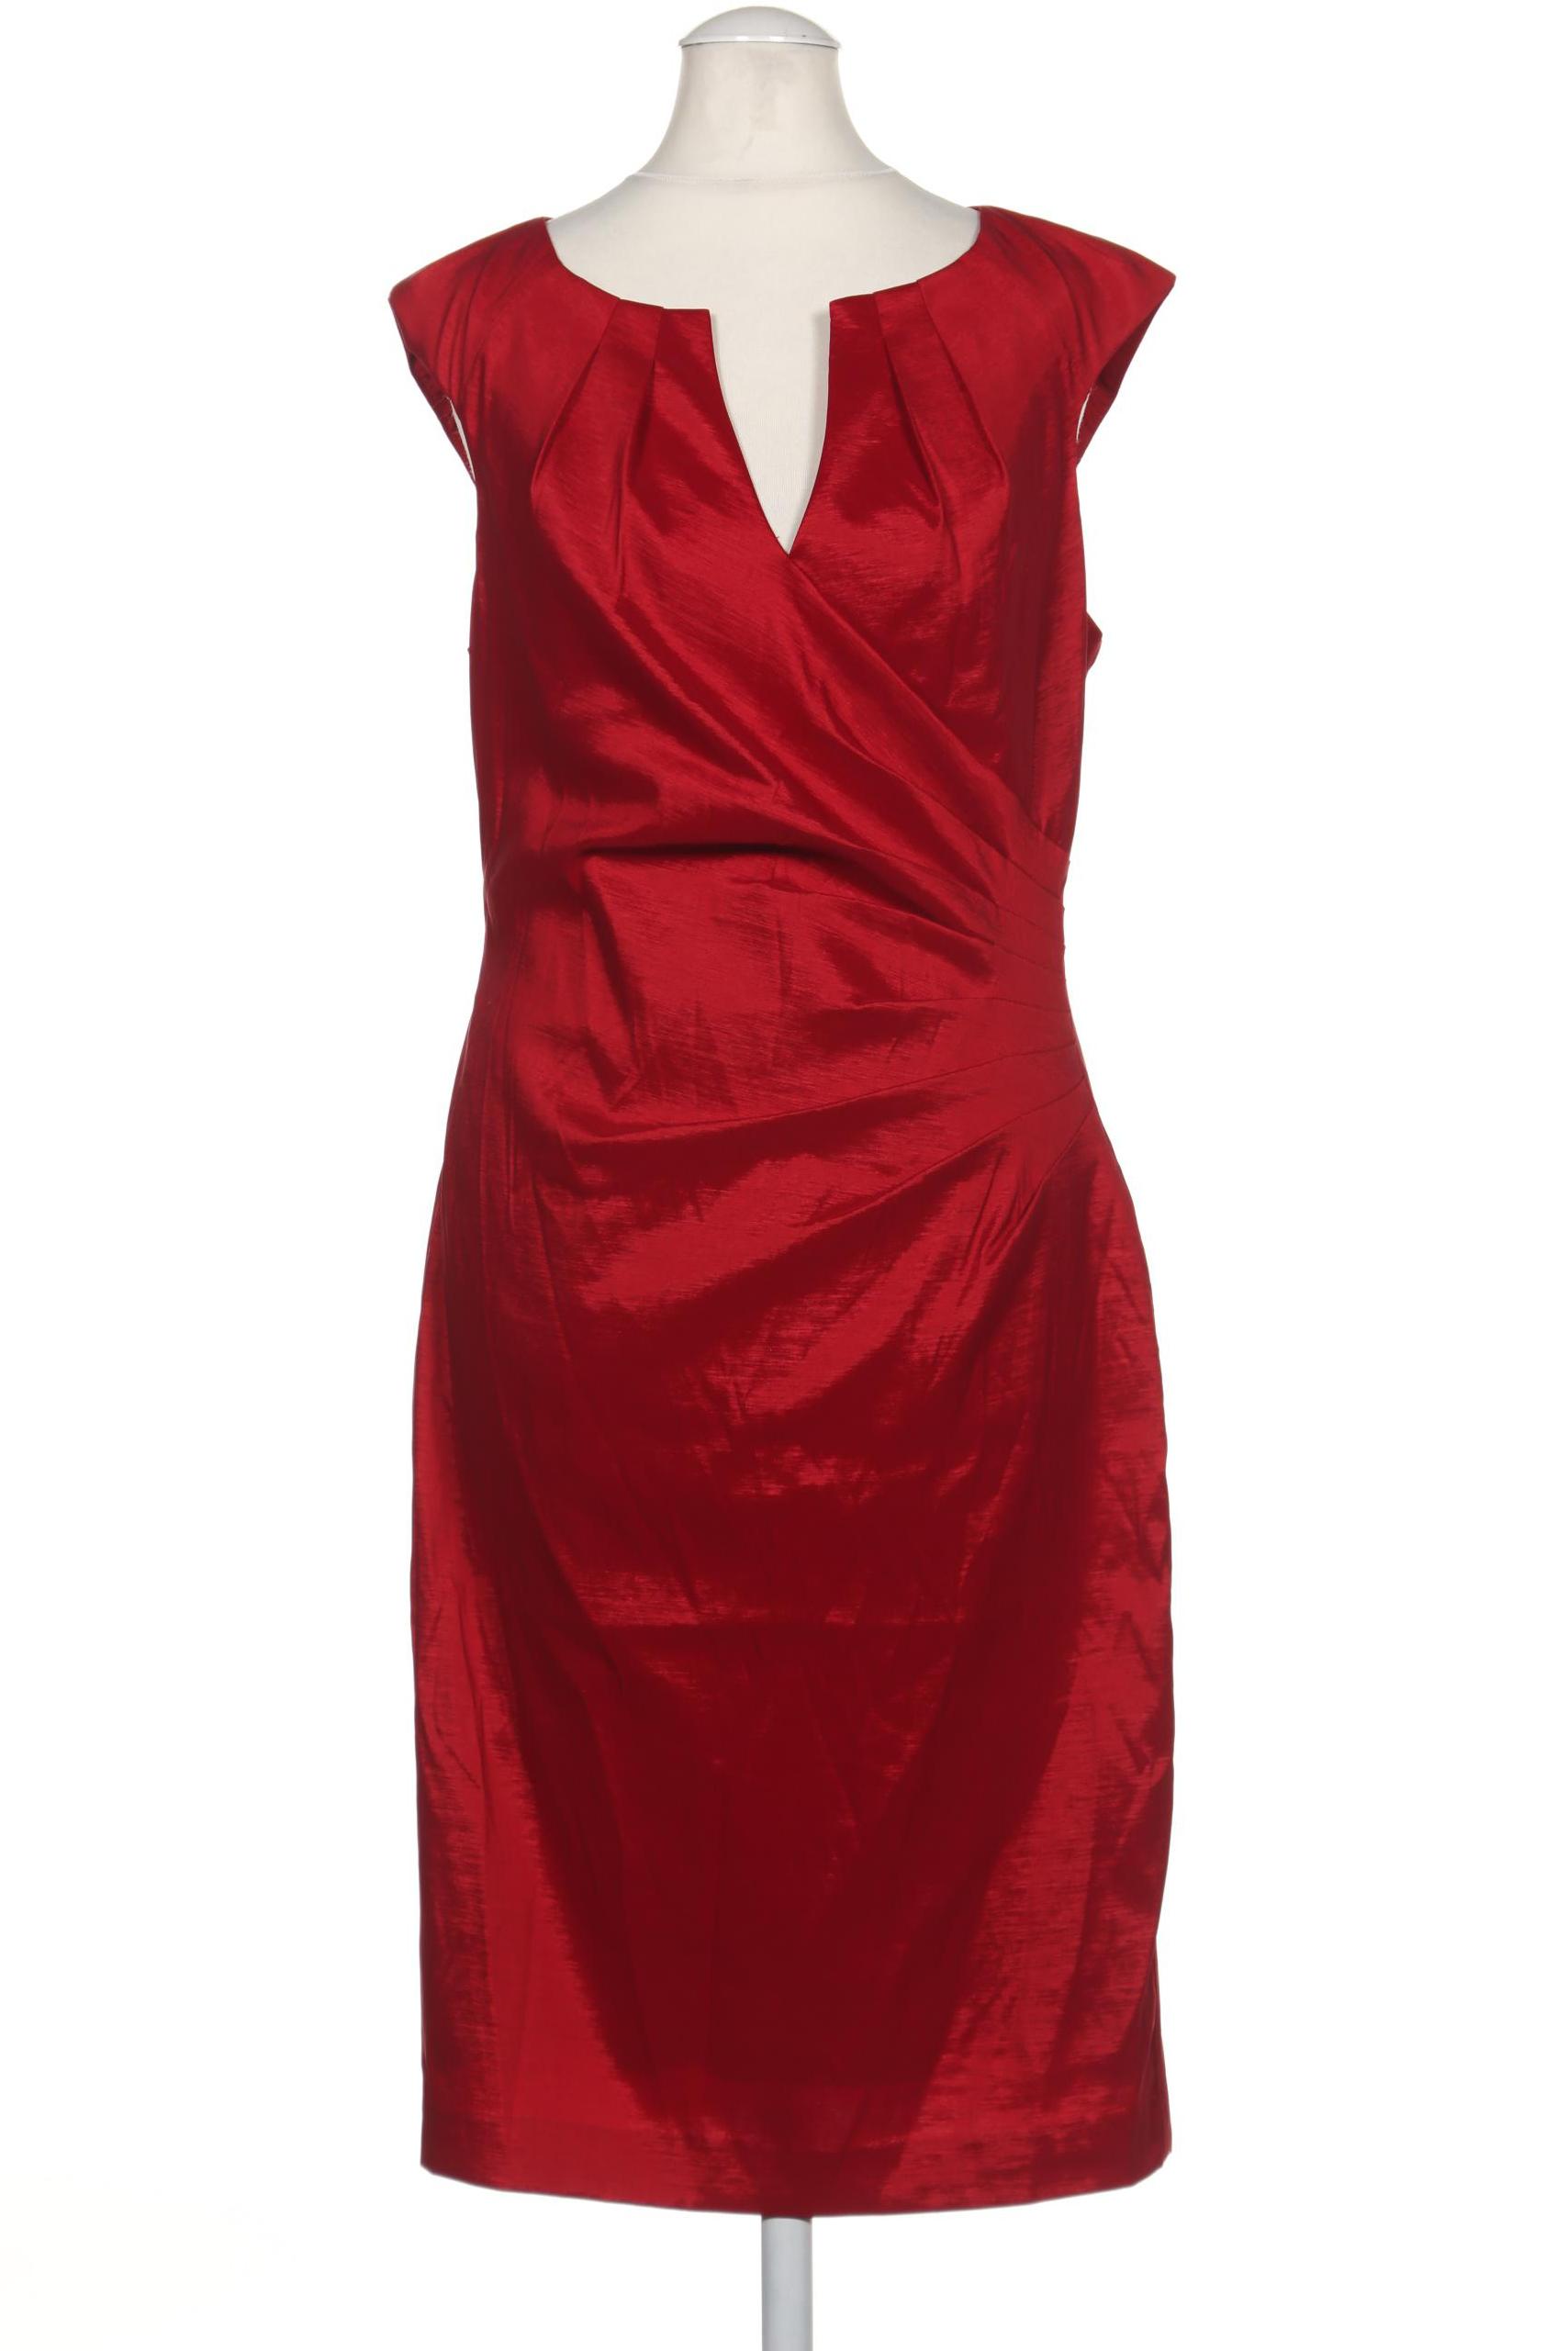 adrianna papell Damen Kleid, rot von Adrianna Papell